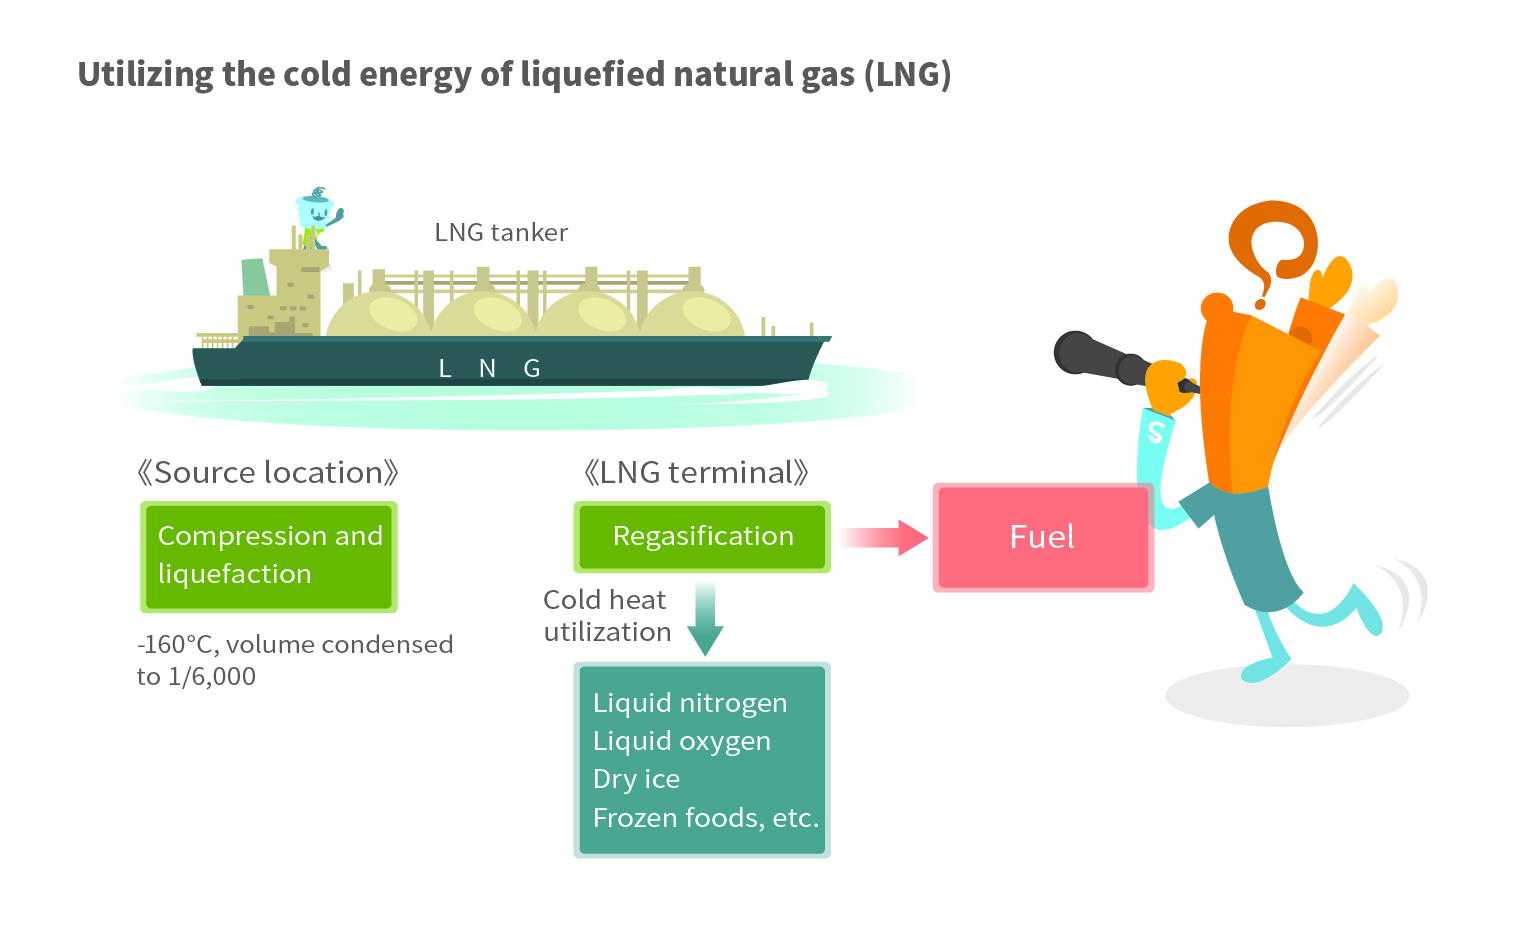 LNG tanker illustration